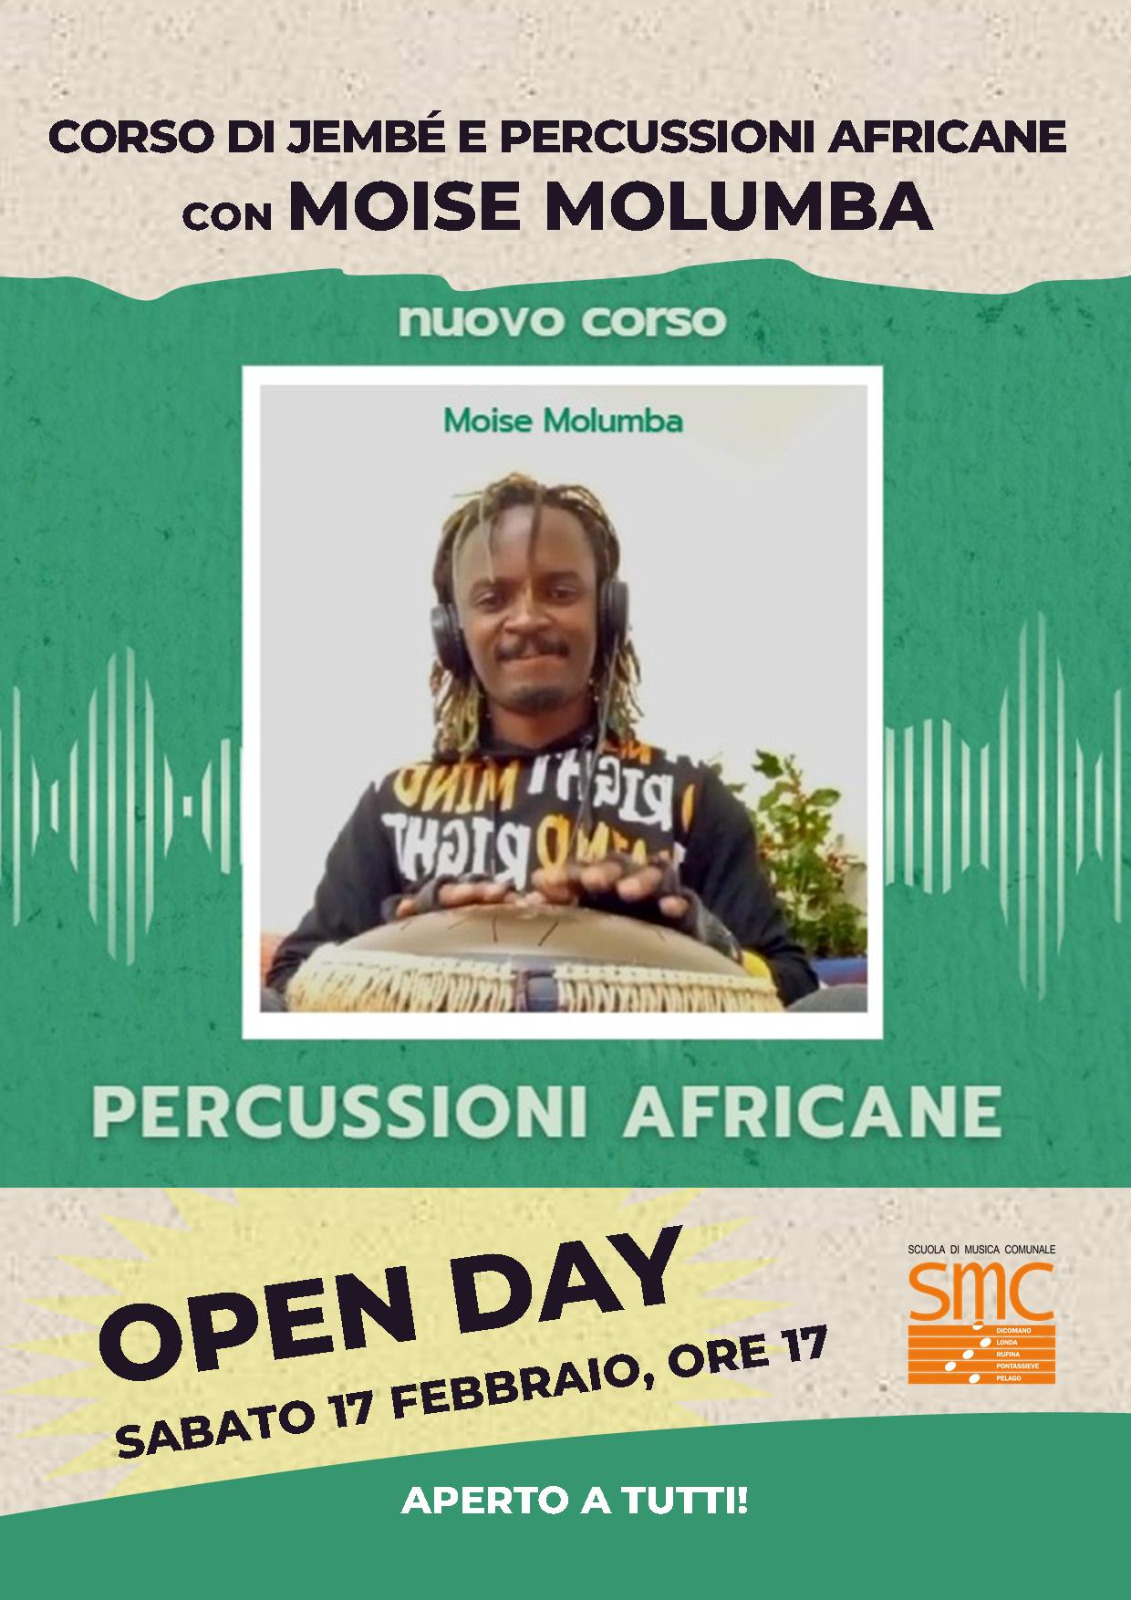 Corso di Djembé e percussioni africane al via